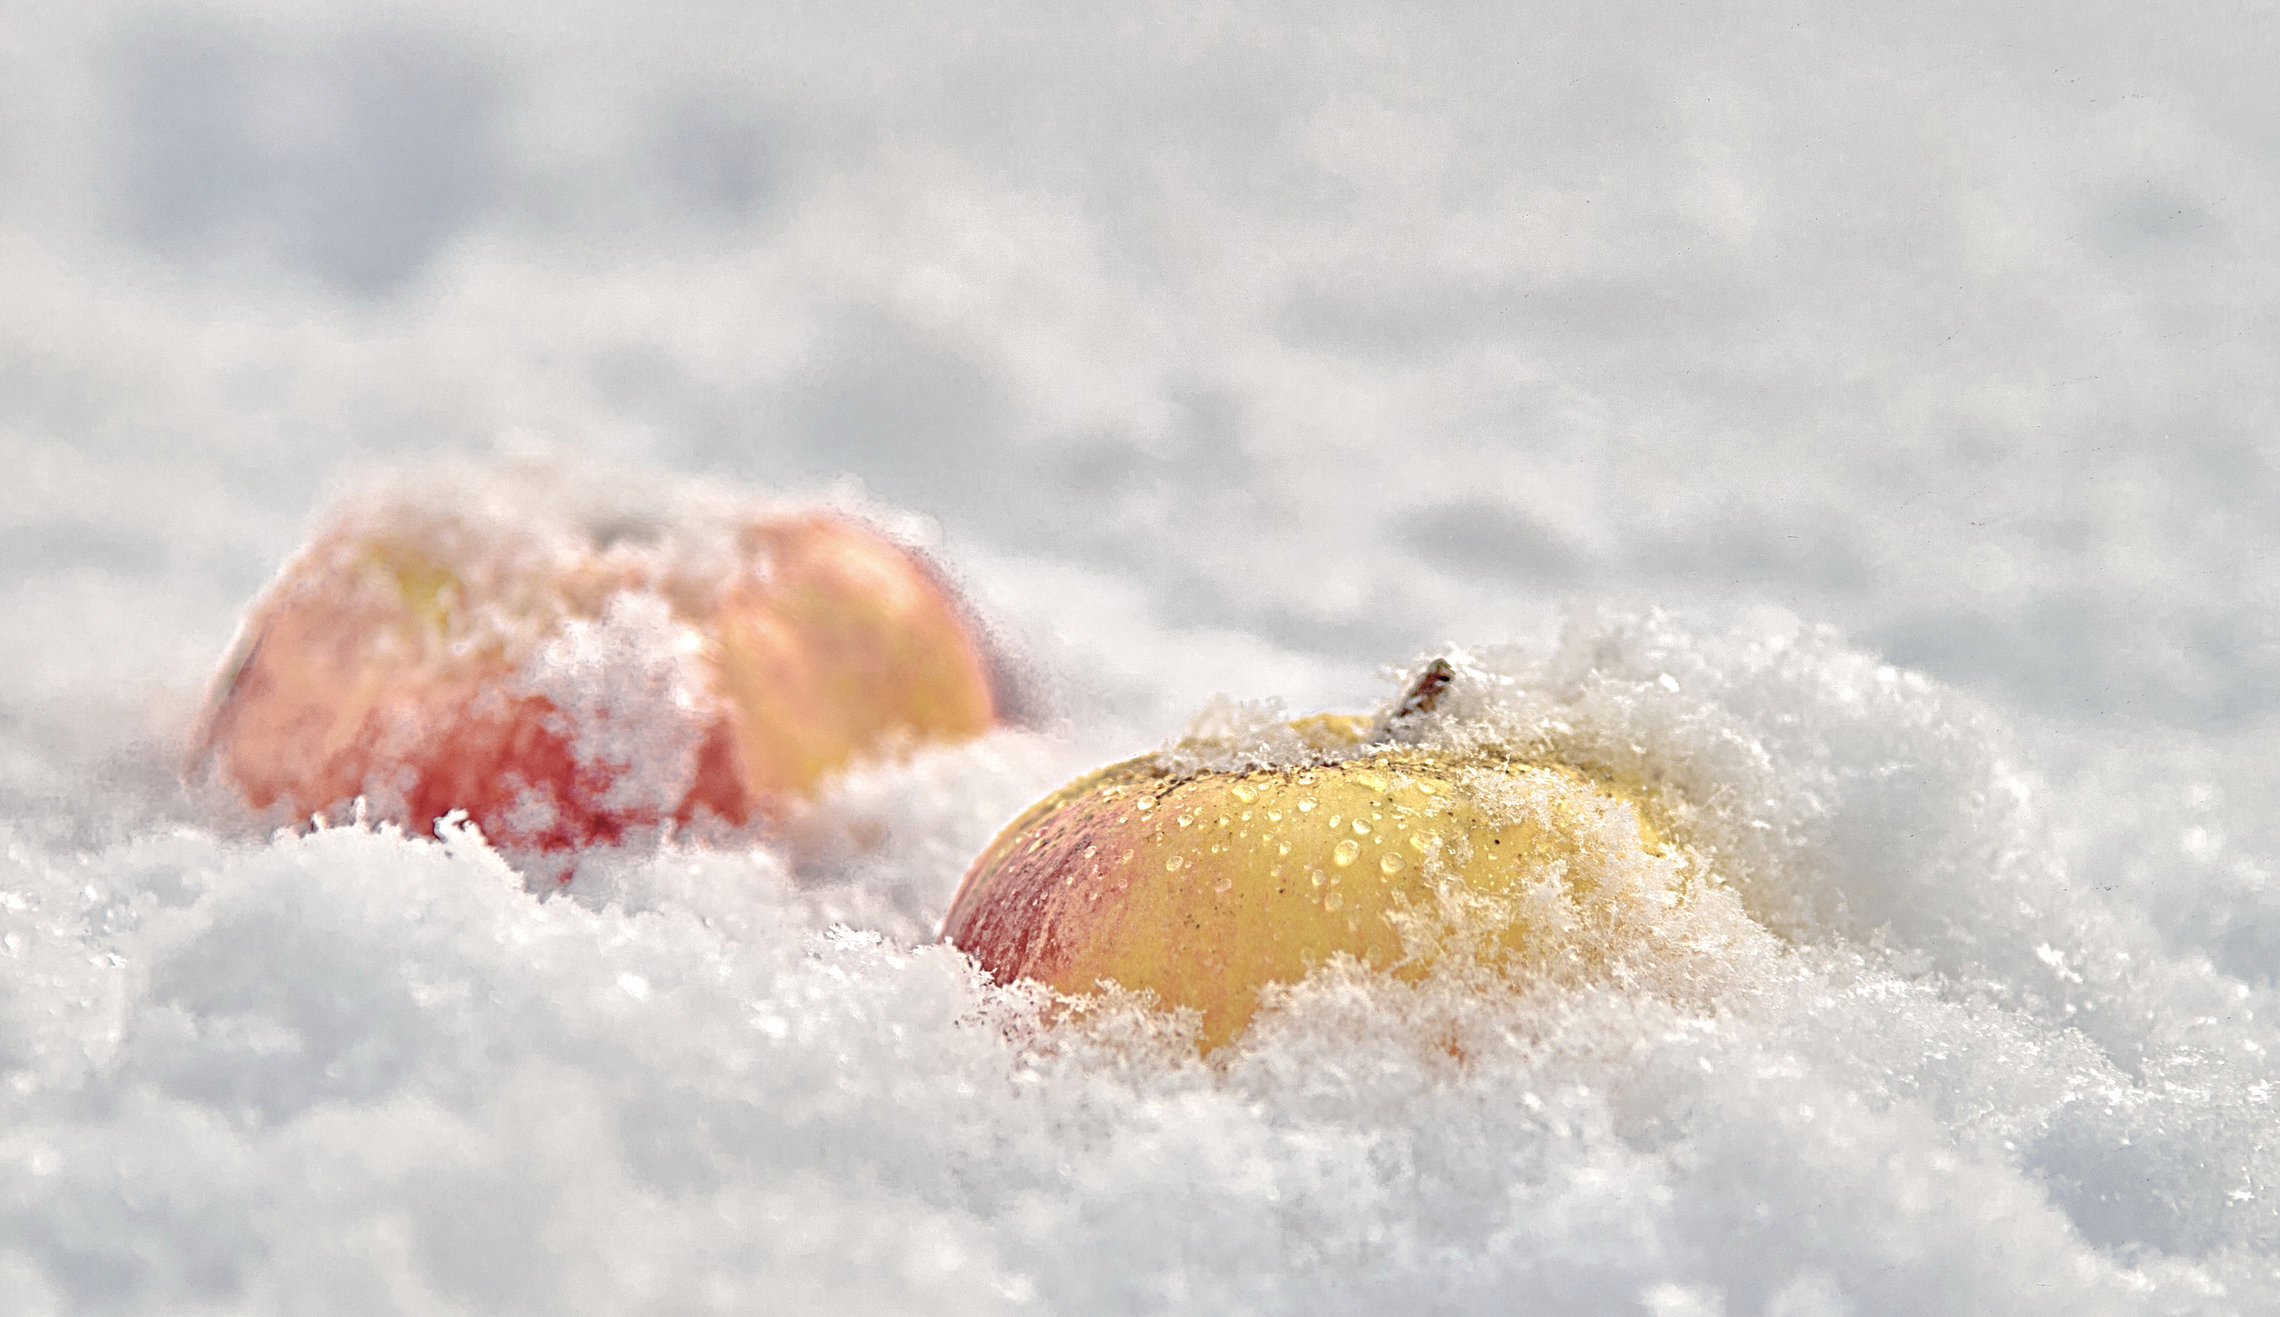 Яблоки на снегу.